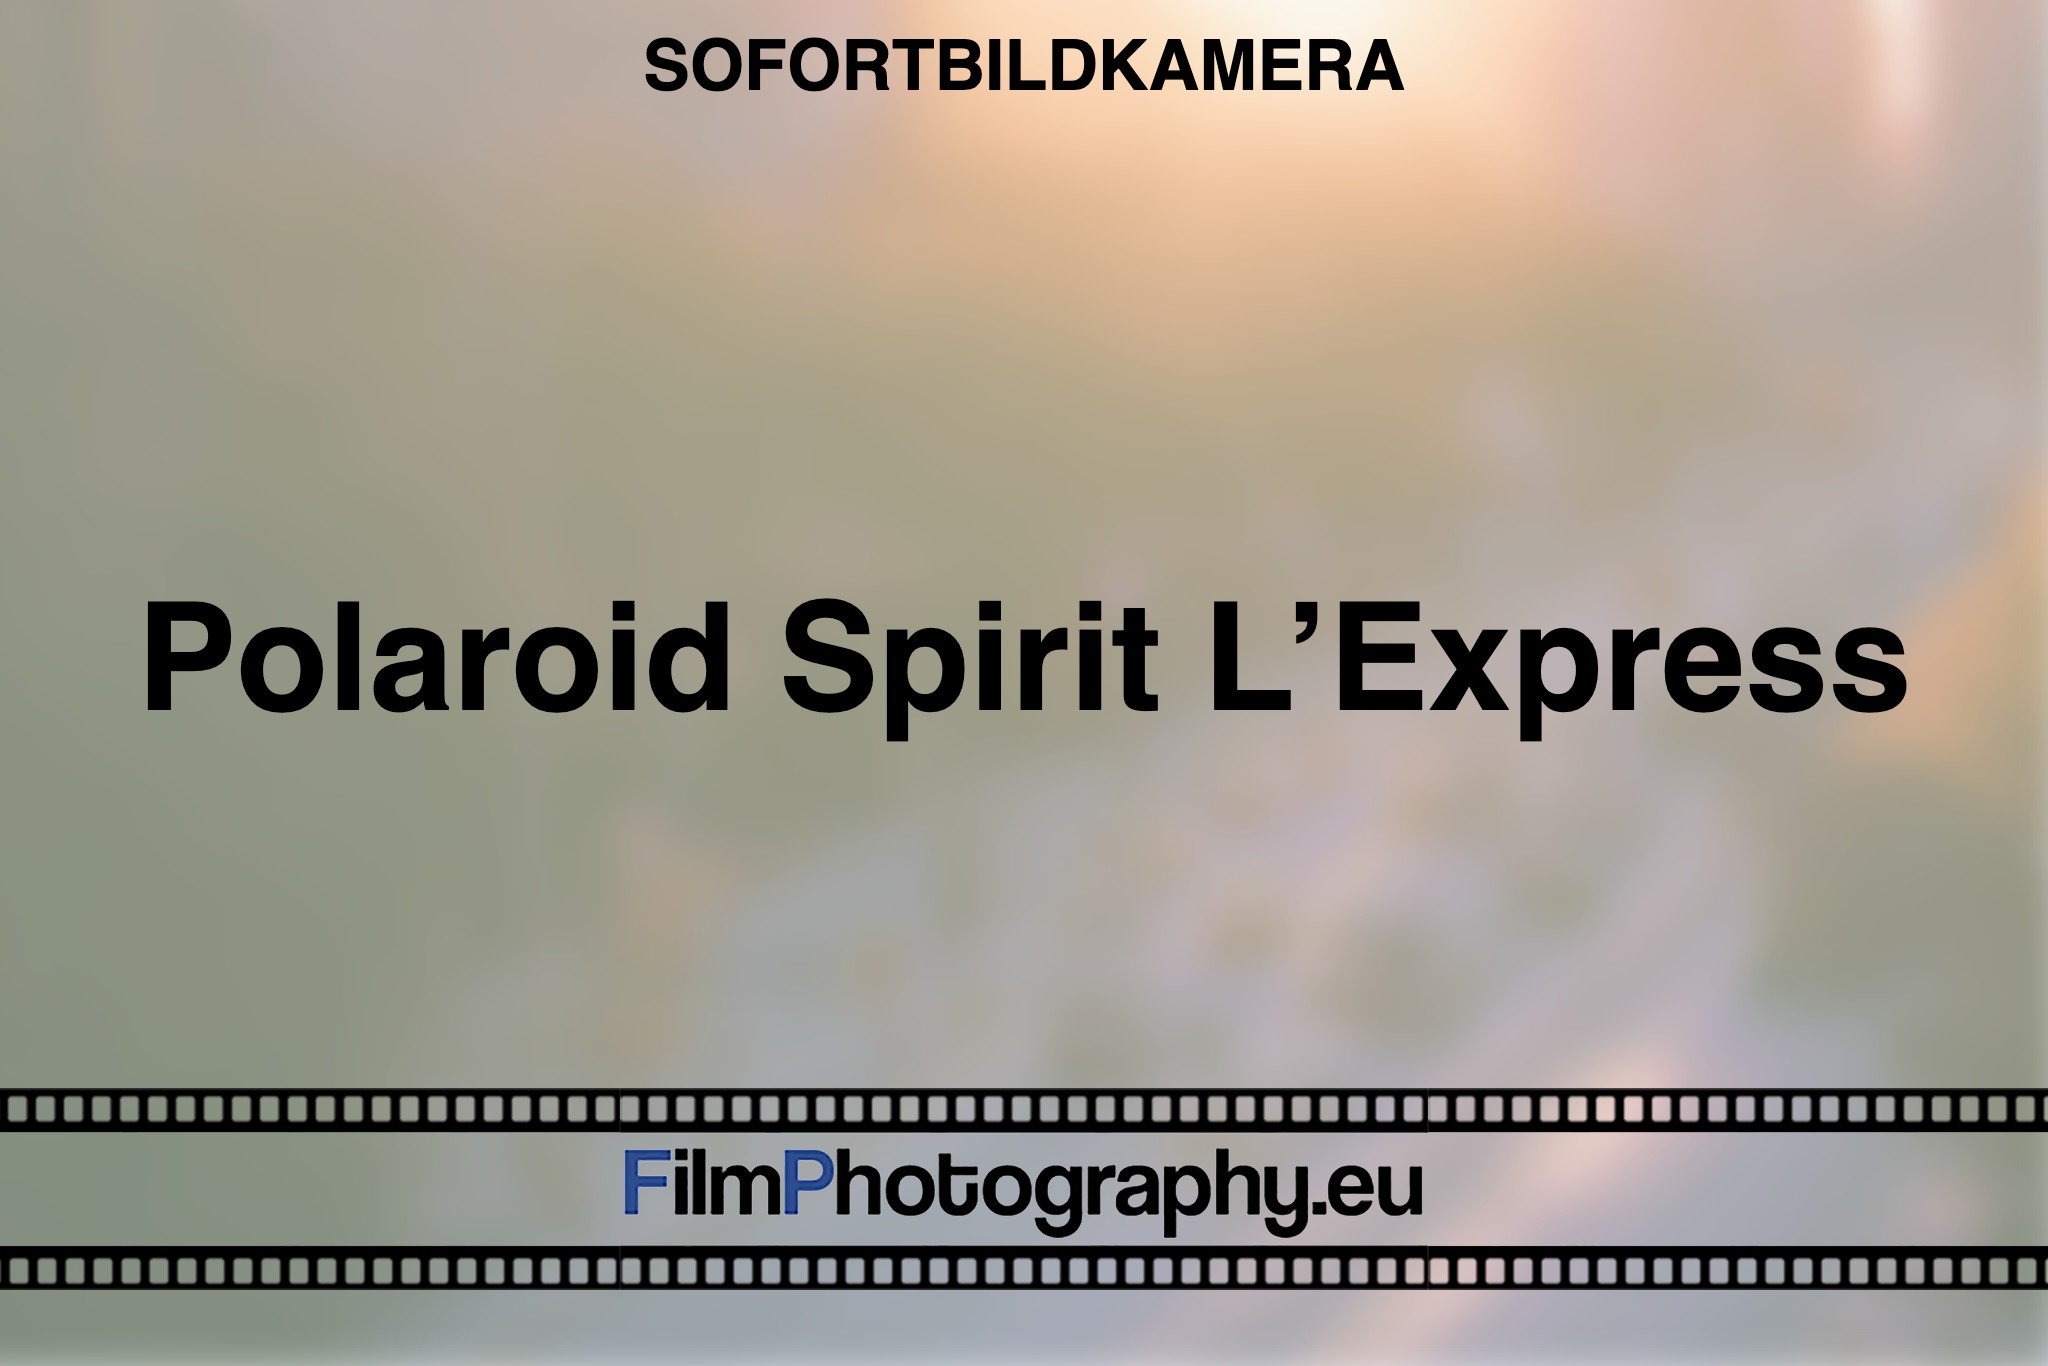 polaroid-spirit-l’express-sofortbildkamera-bnv